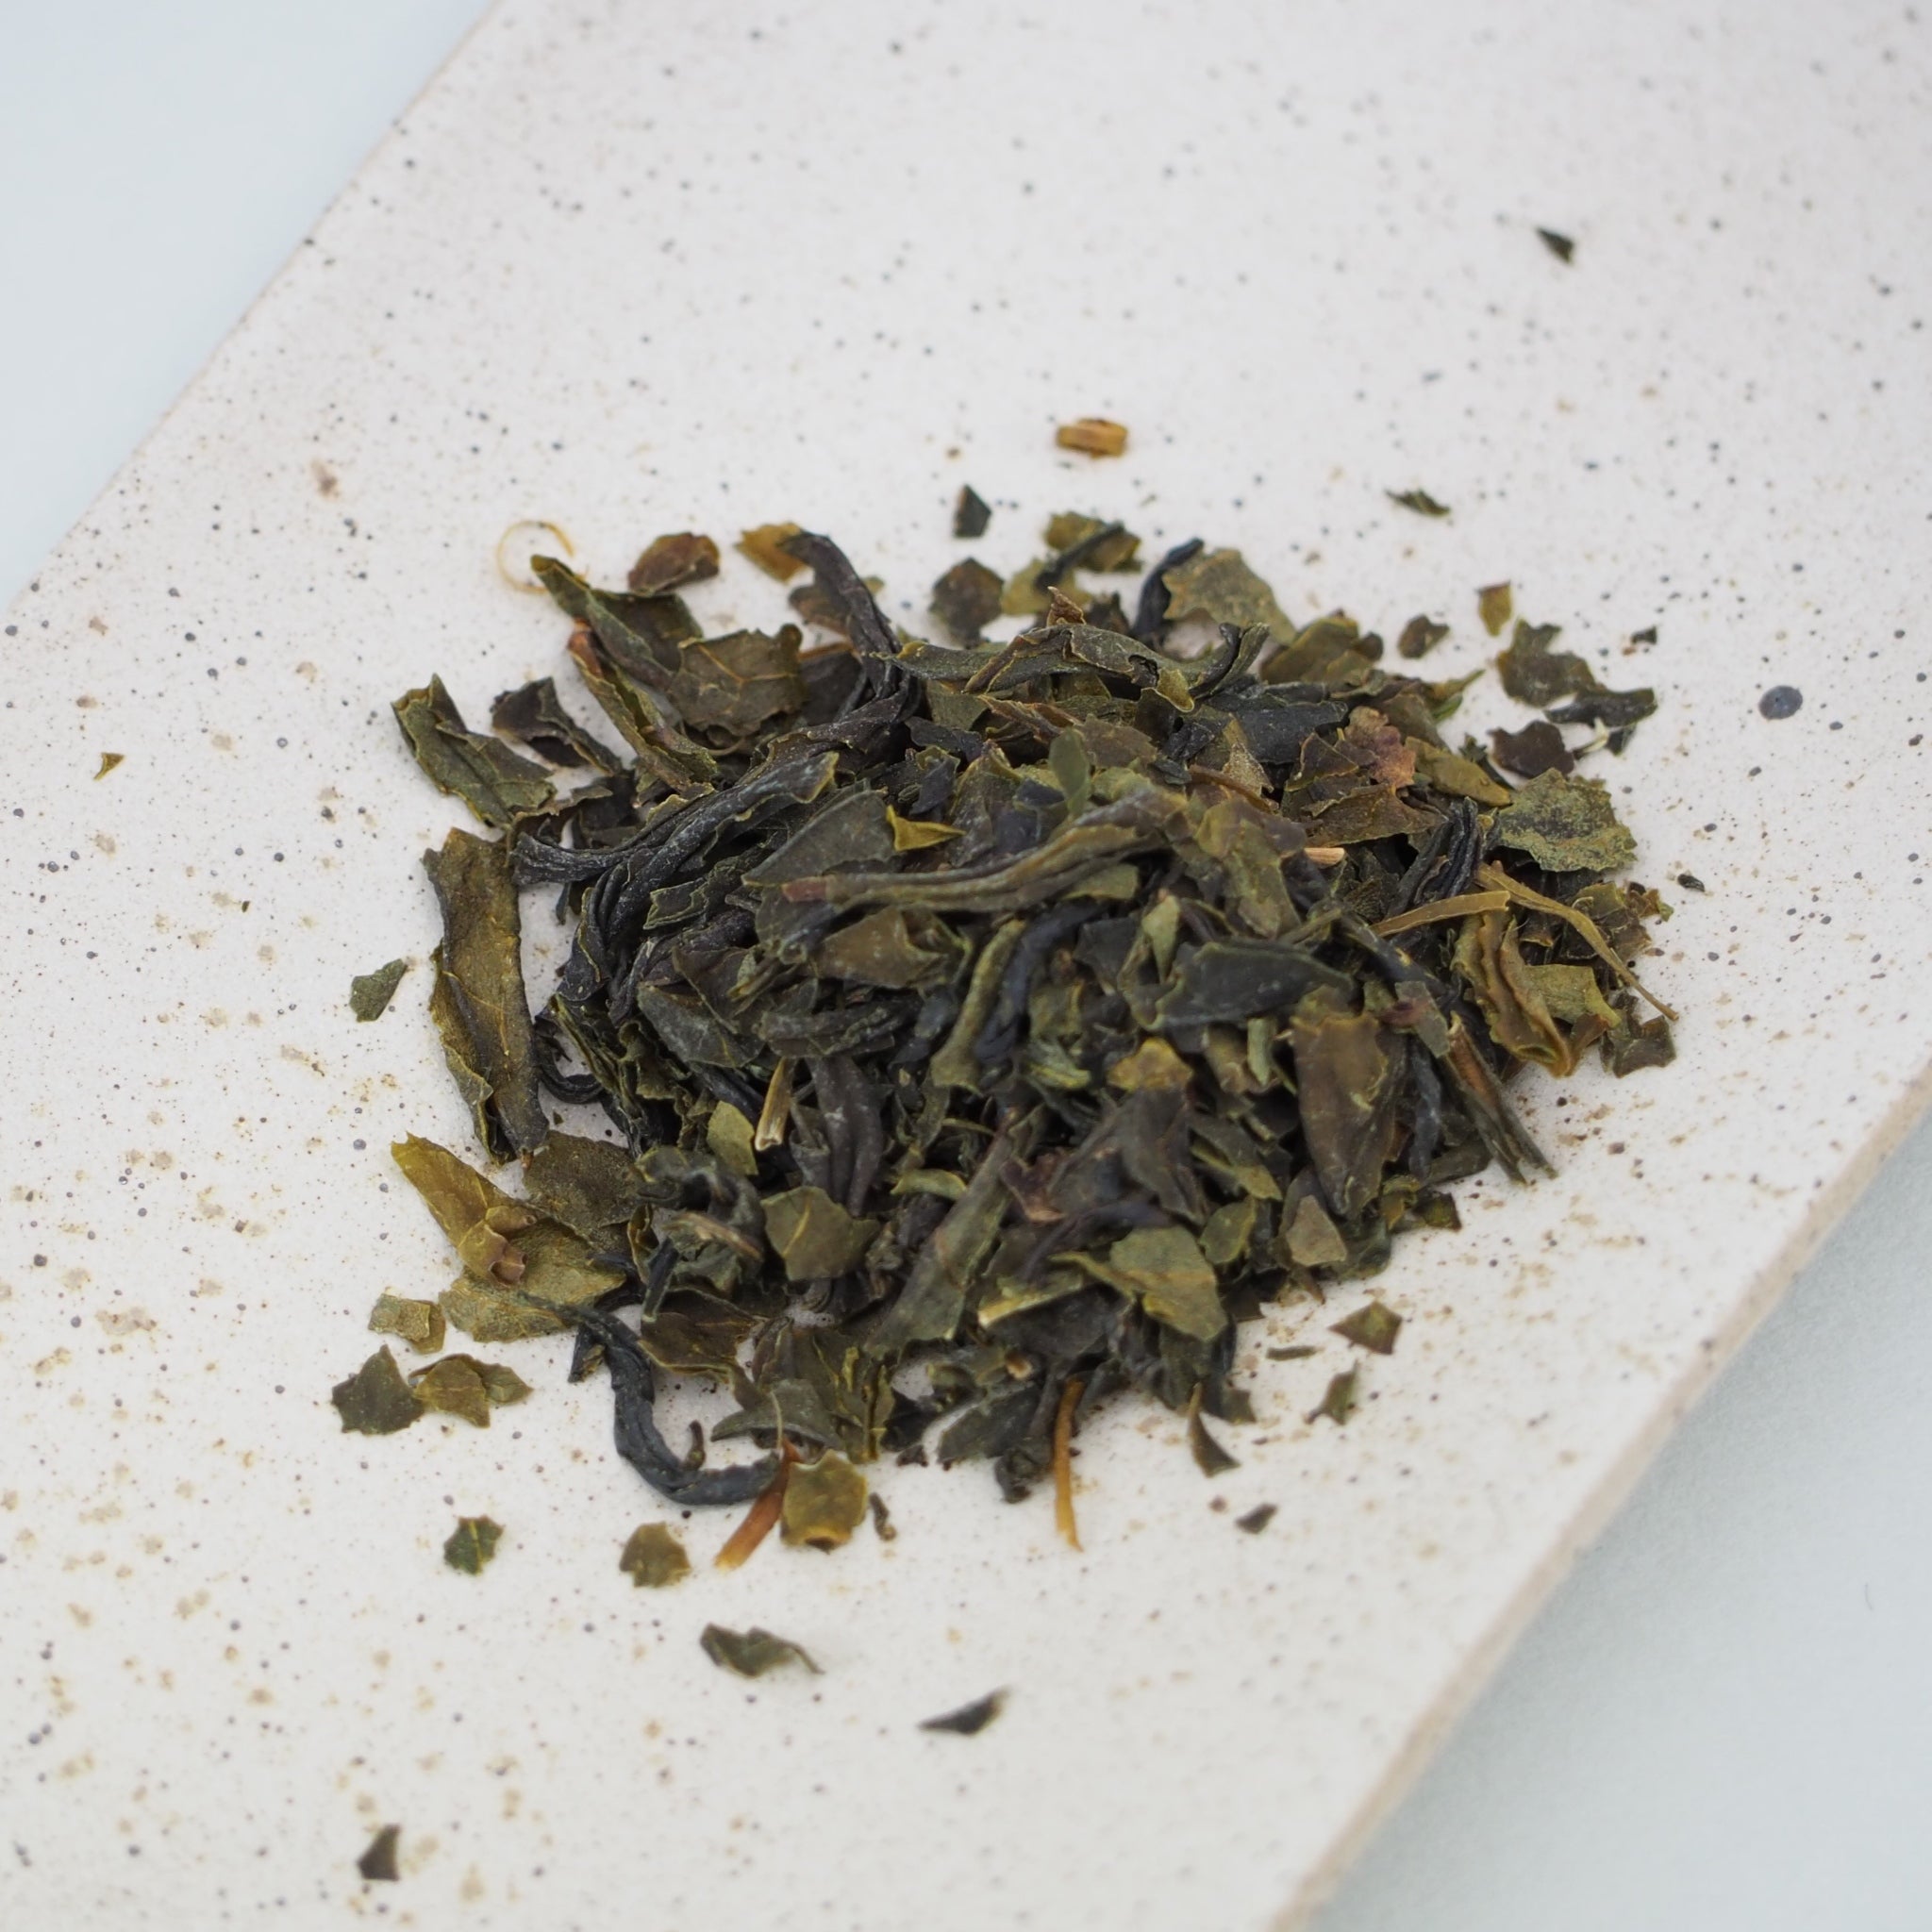 国産釜炒り茶佐護茶の茶葉画像です。茶葉は少し茶色がかった緑で、乾いた昆布の色に似ています。